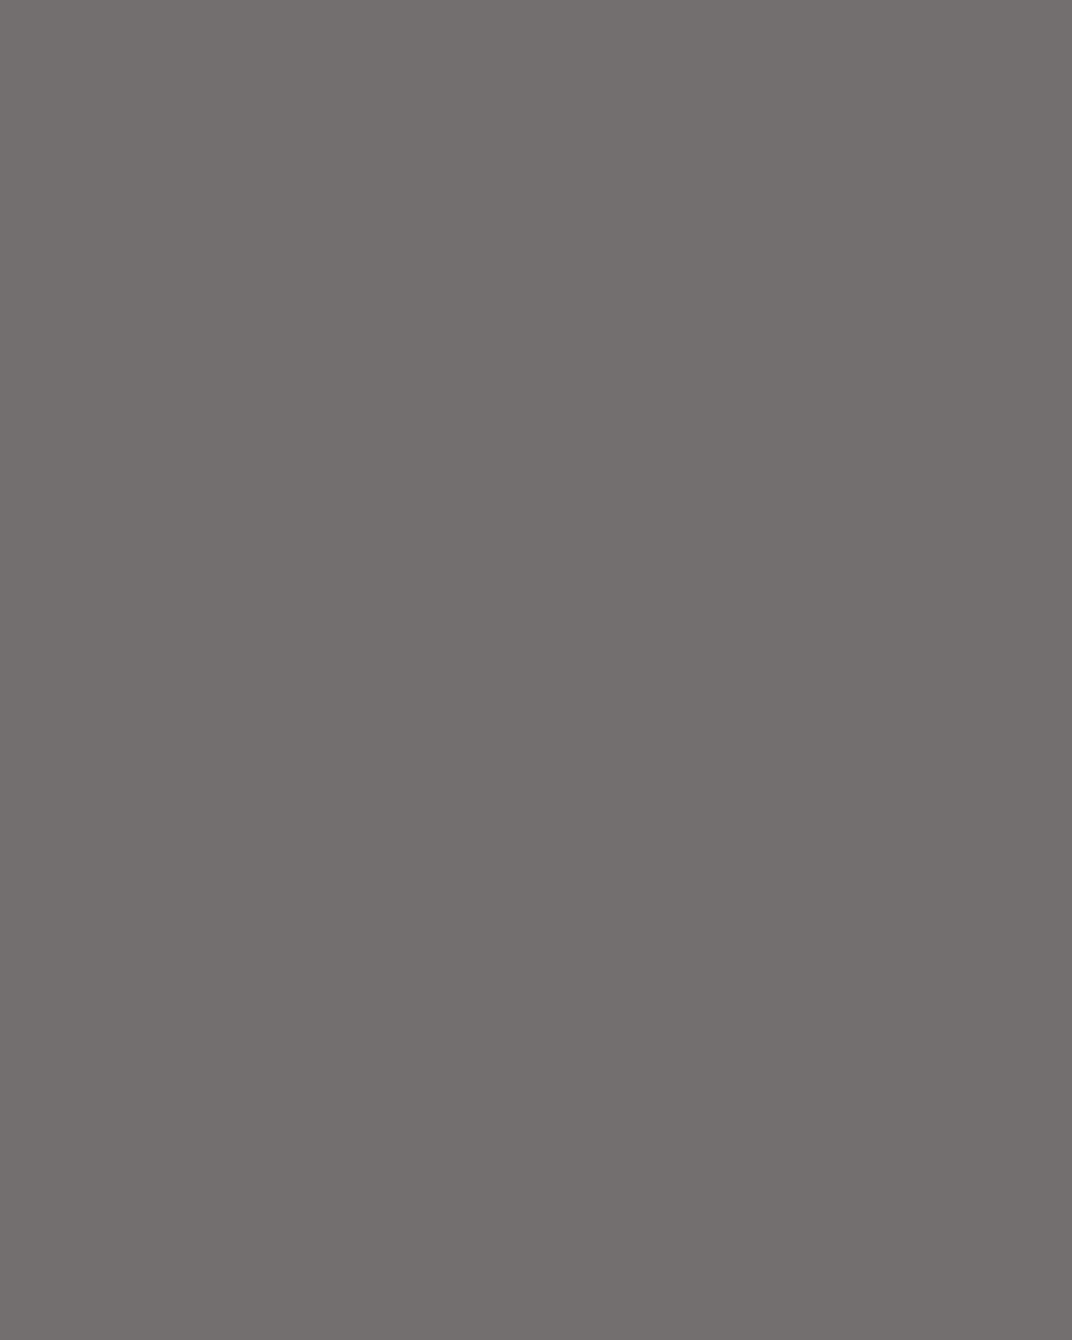 Анна Михалкова в роли Дуняши в художественном фильме Никиты Михалкова «Сибирский цирюльник». 1996. Нижний Новгород. Фотография: Николай Мошков / ИТАР-ТАСС